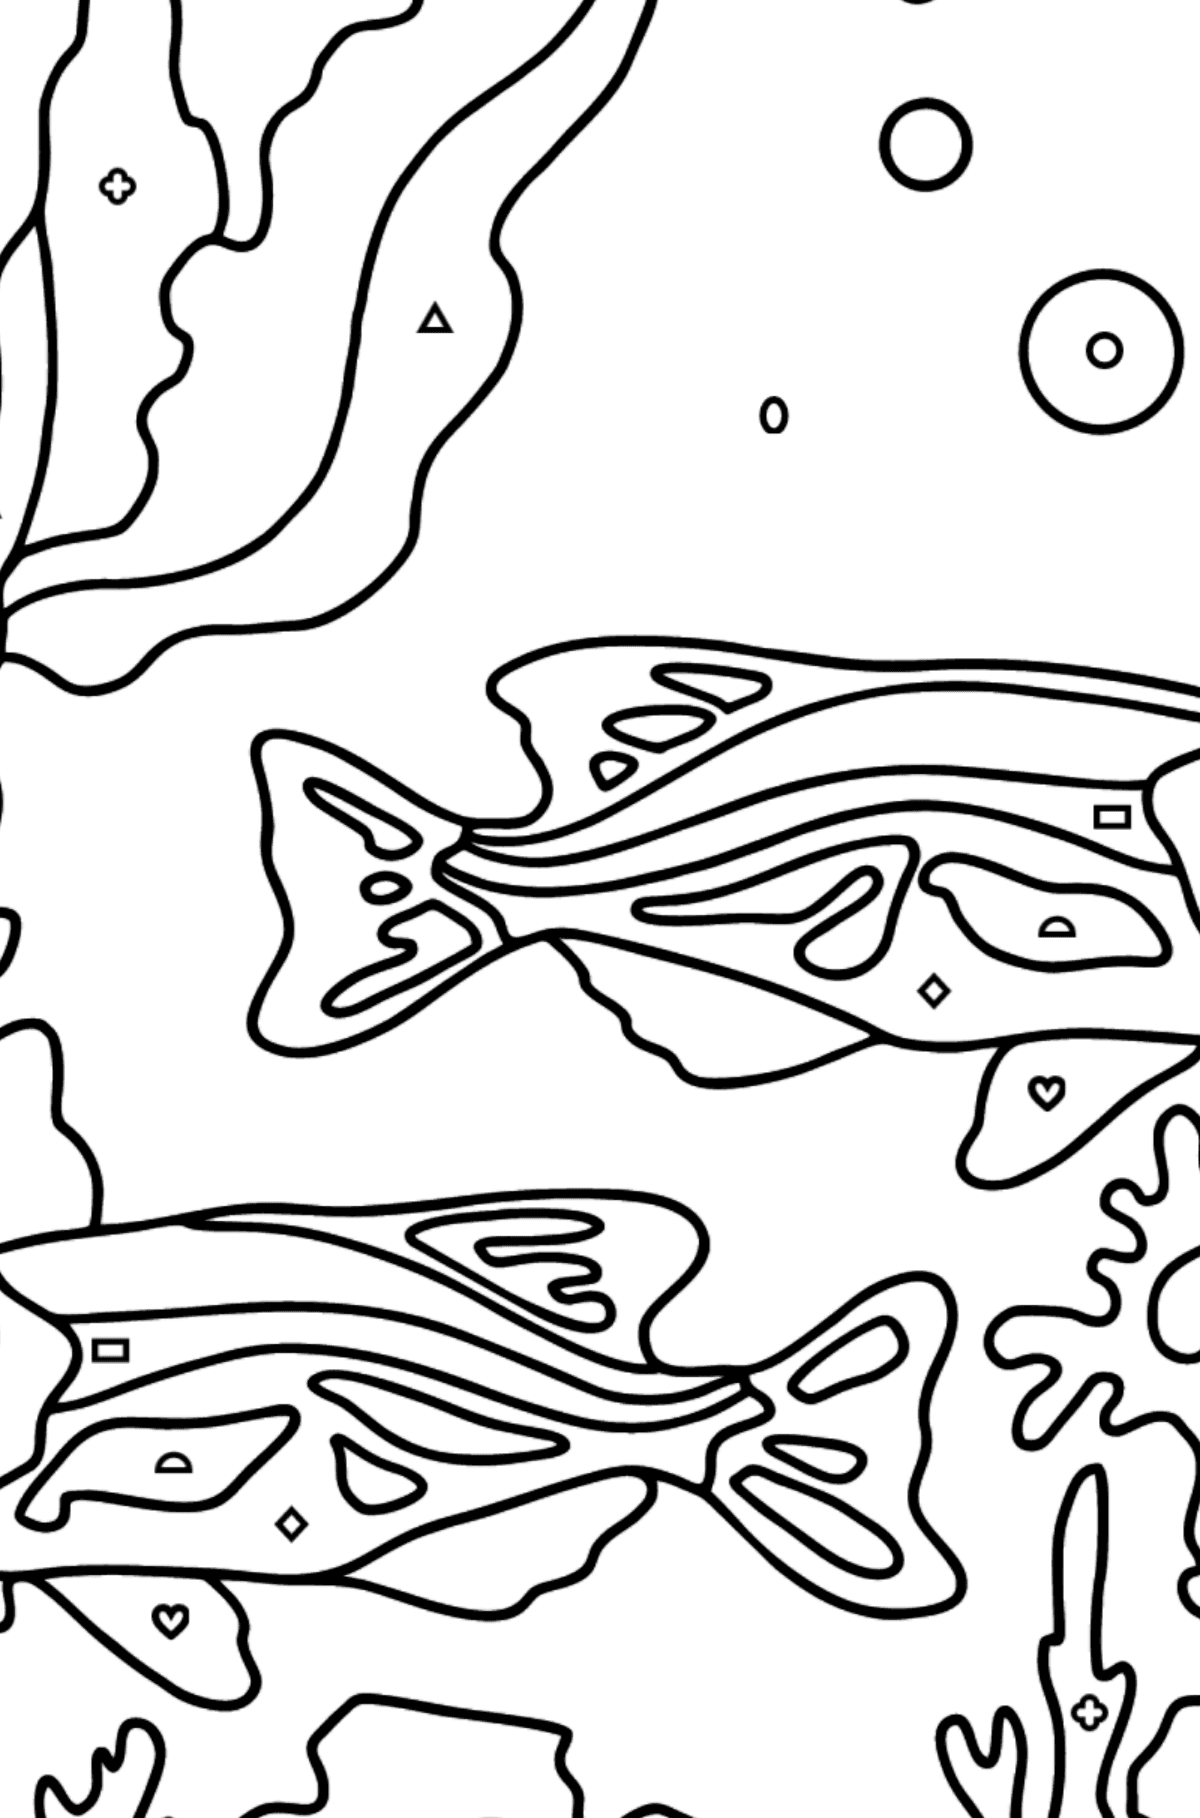 Dibujo para Colorear - Los Peces están Nadando Juntos Pacíficamente - Colorear por Formas Geométricas para Niños